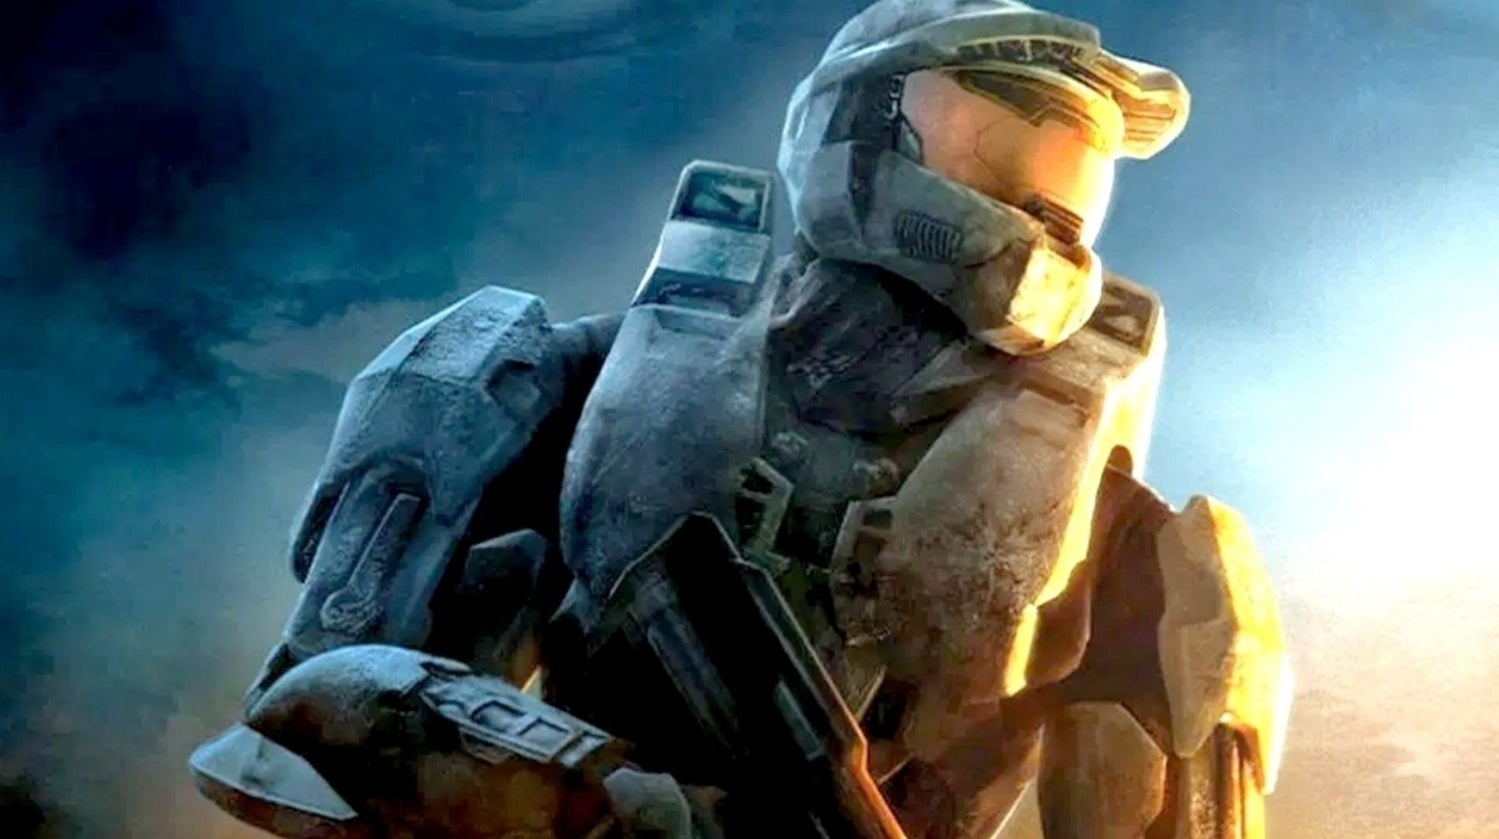 Immagine di Halo 3 sta per ricevere un'altra mappa dal titolo cancellato free-to-play Halo Online